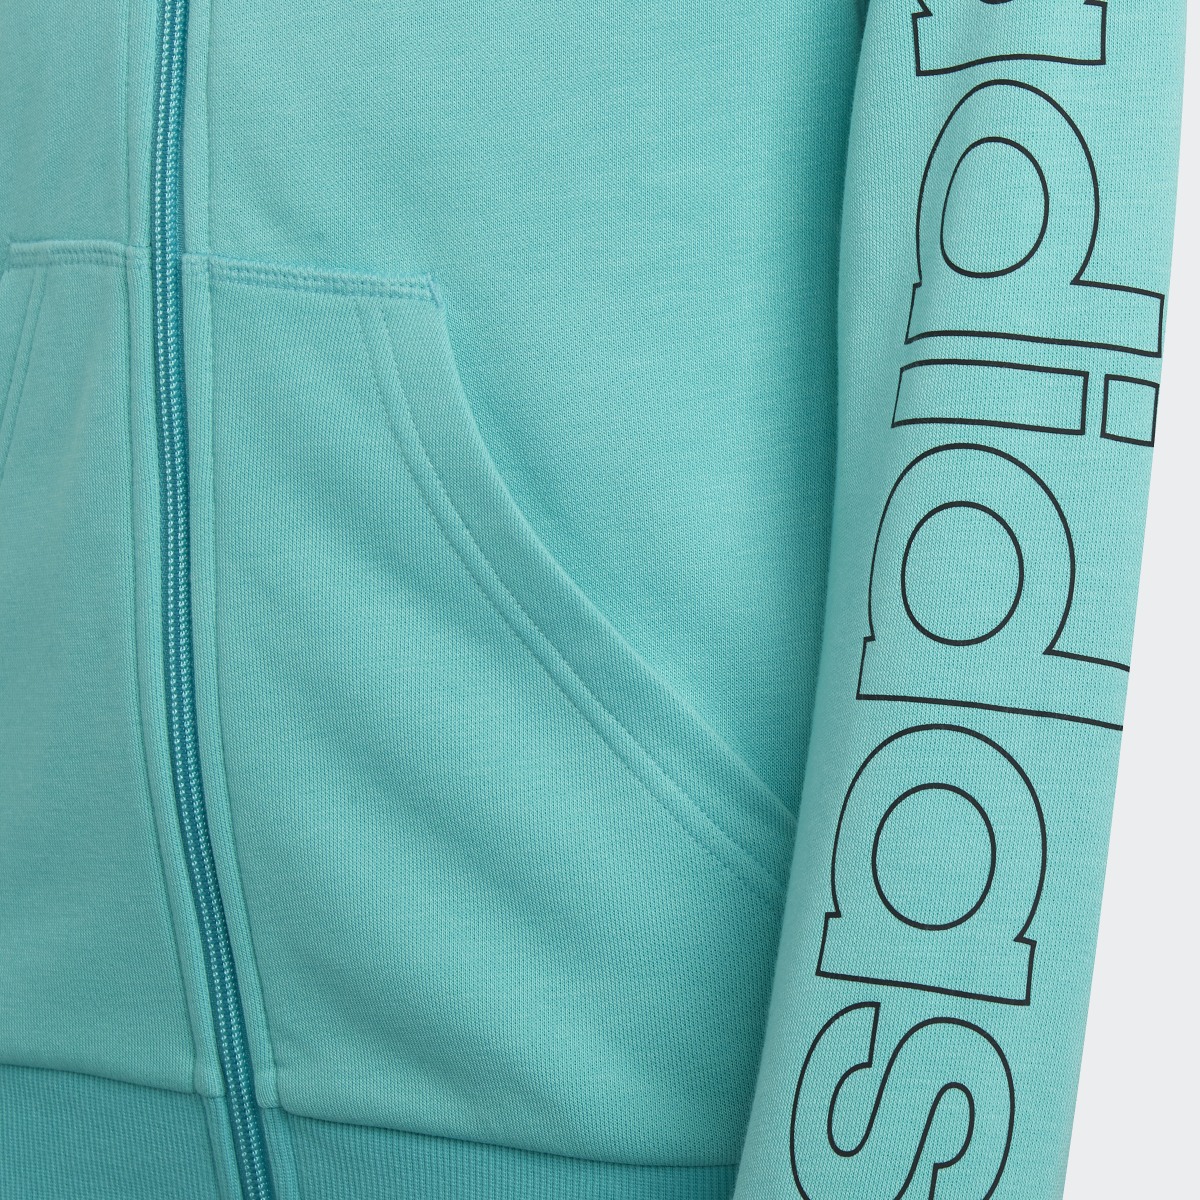 Adidas Essentials Full-Zip Hoodie. 4